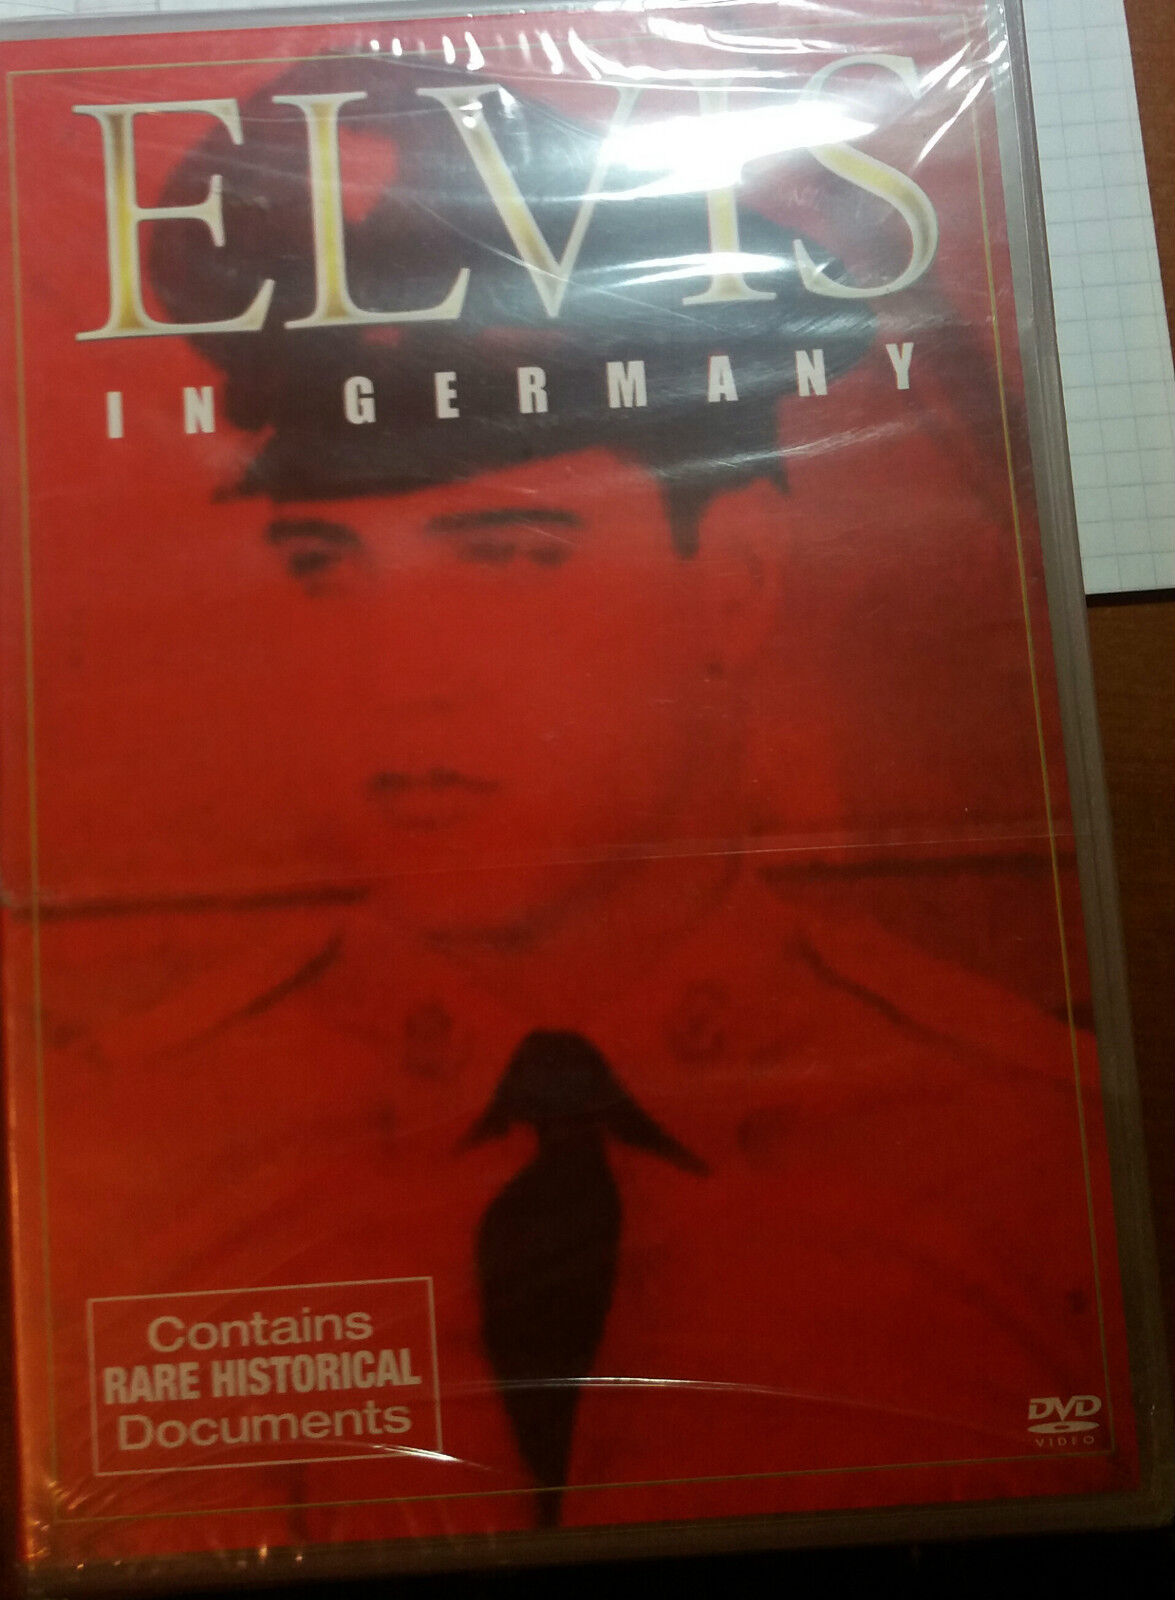 ELVIS IN GERMANY - WATERFALLSTUDIOS - 2003 - DVD - M